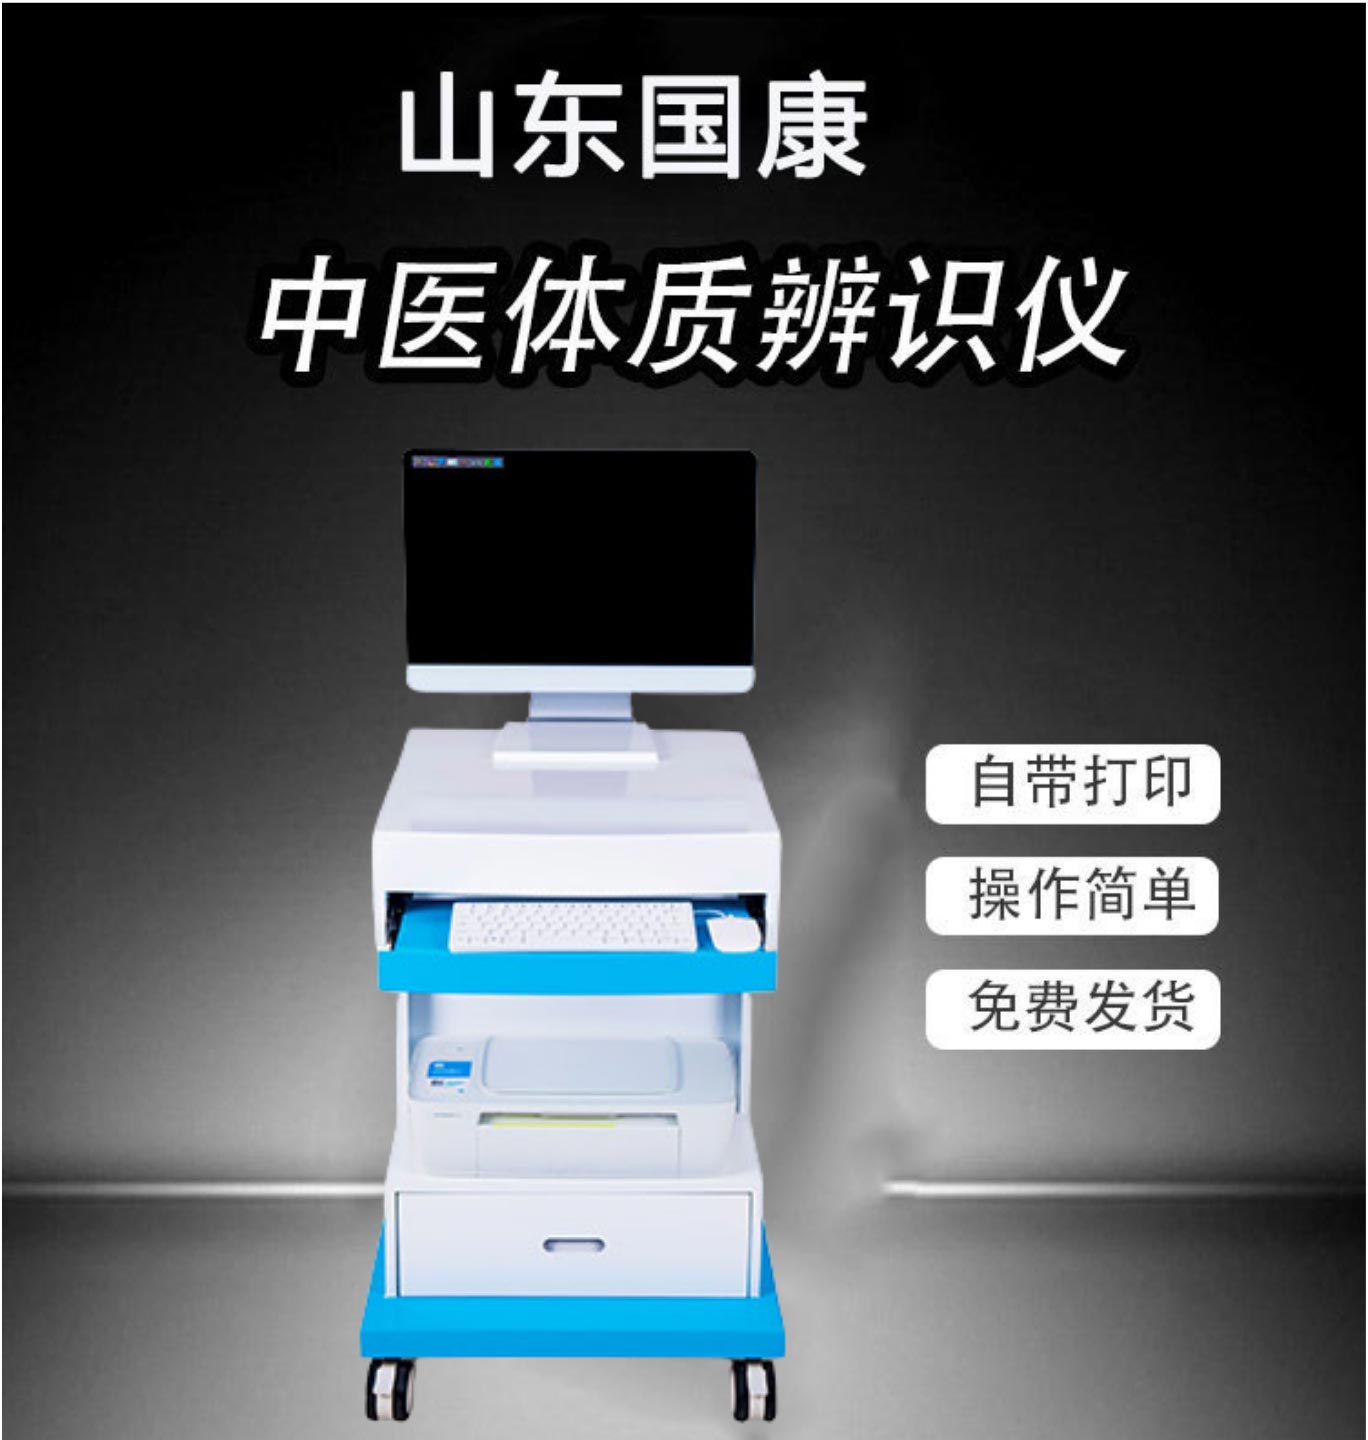 中医体质辨识仪身份证录入自助一体机在中医院广泛使用